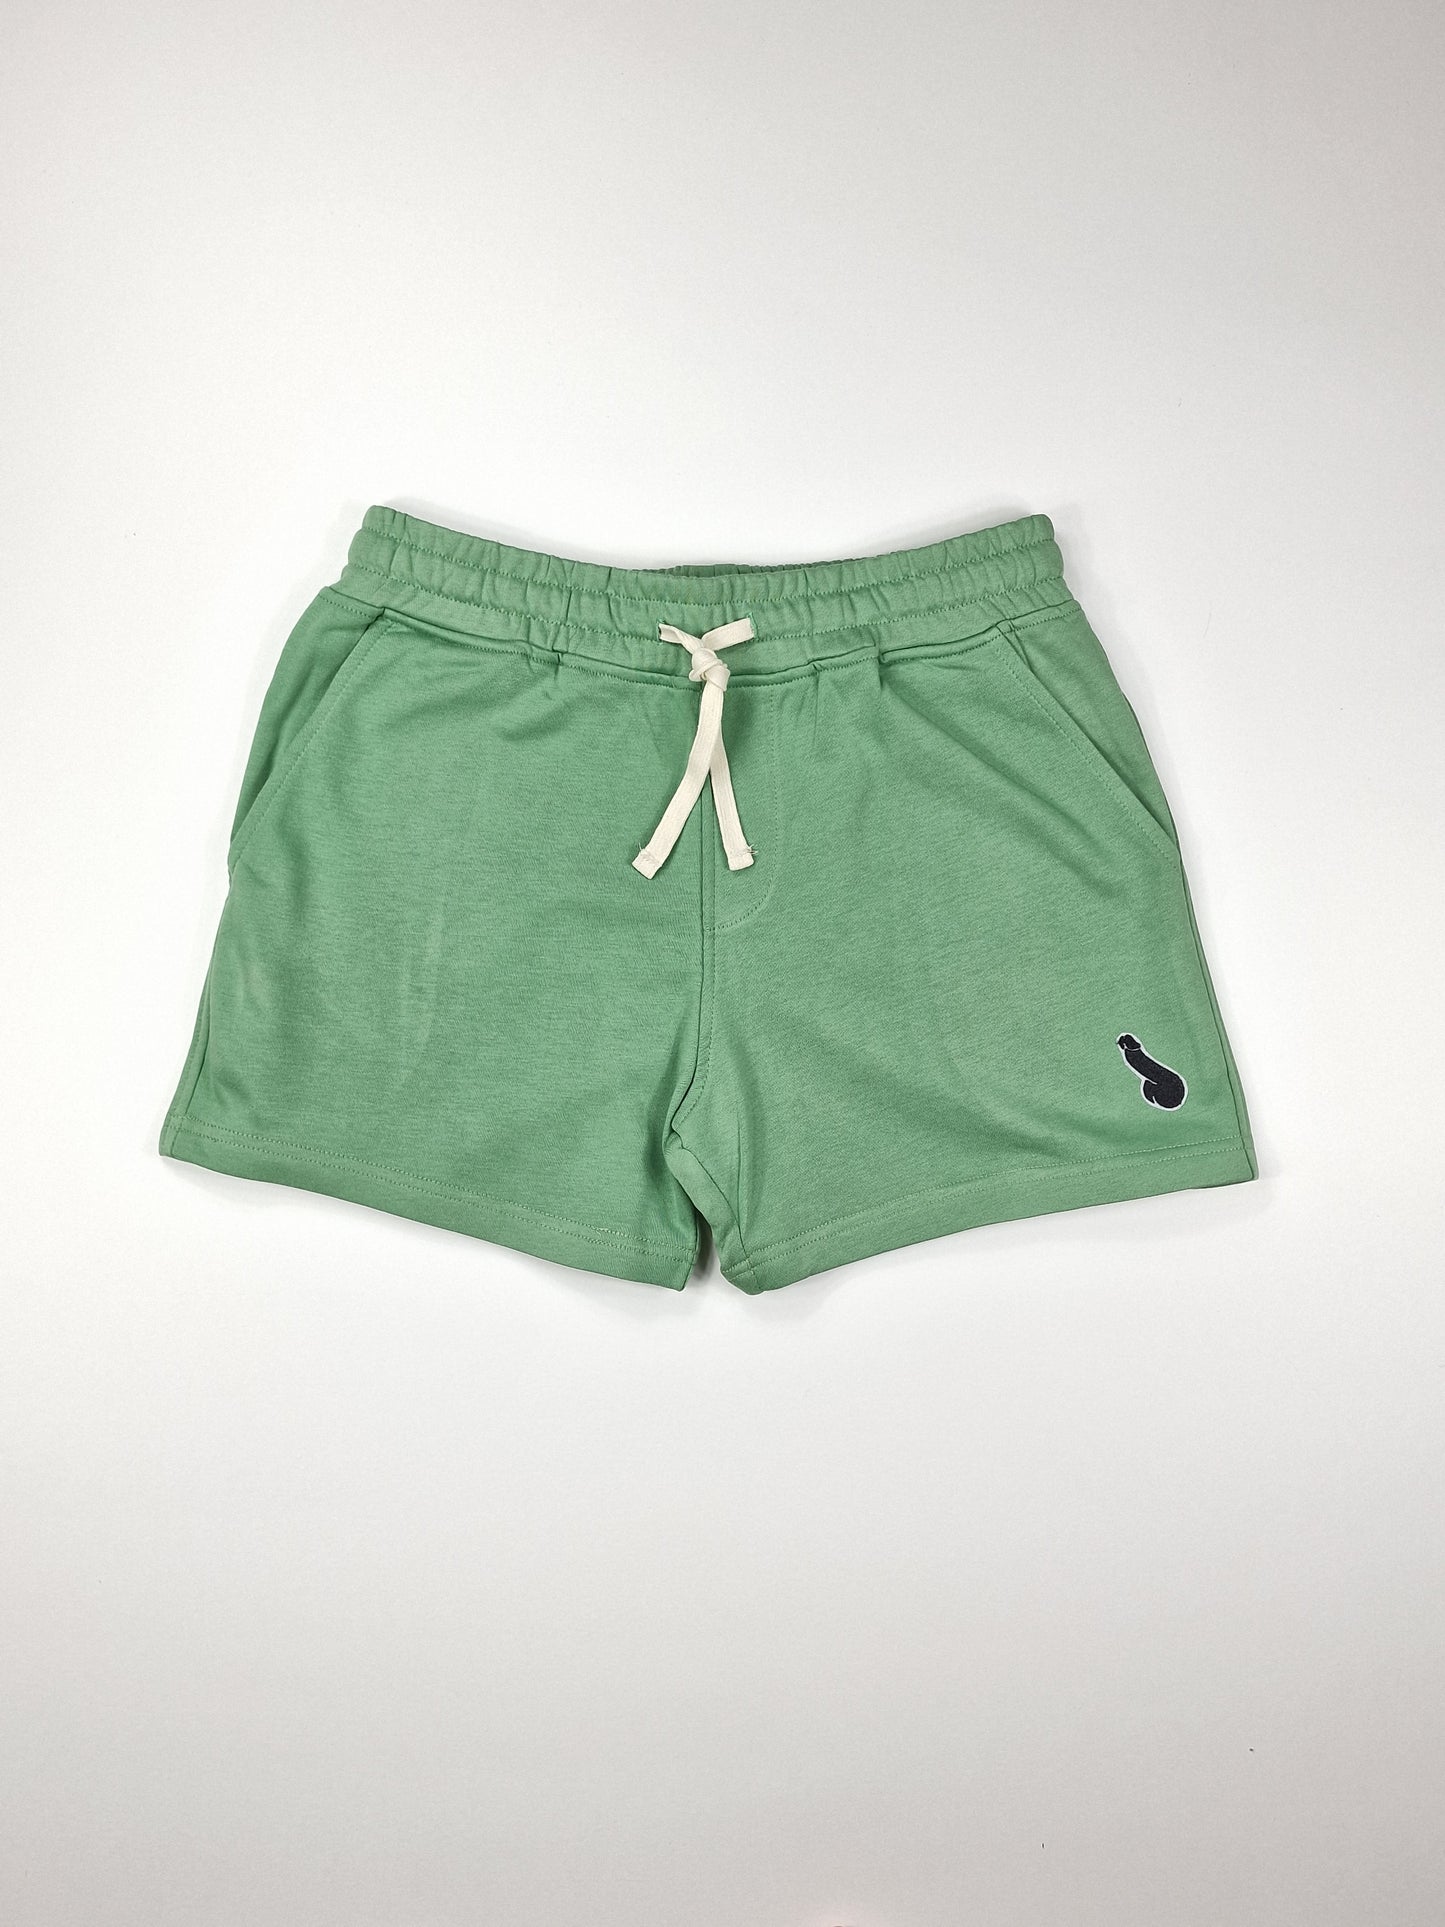 Gröna shorts, träningsshorts eller sweatshorts